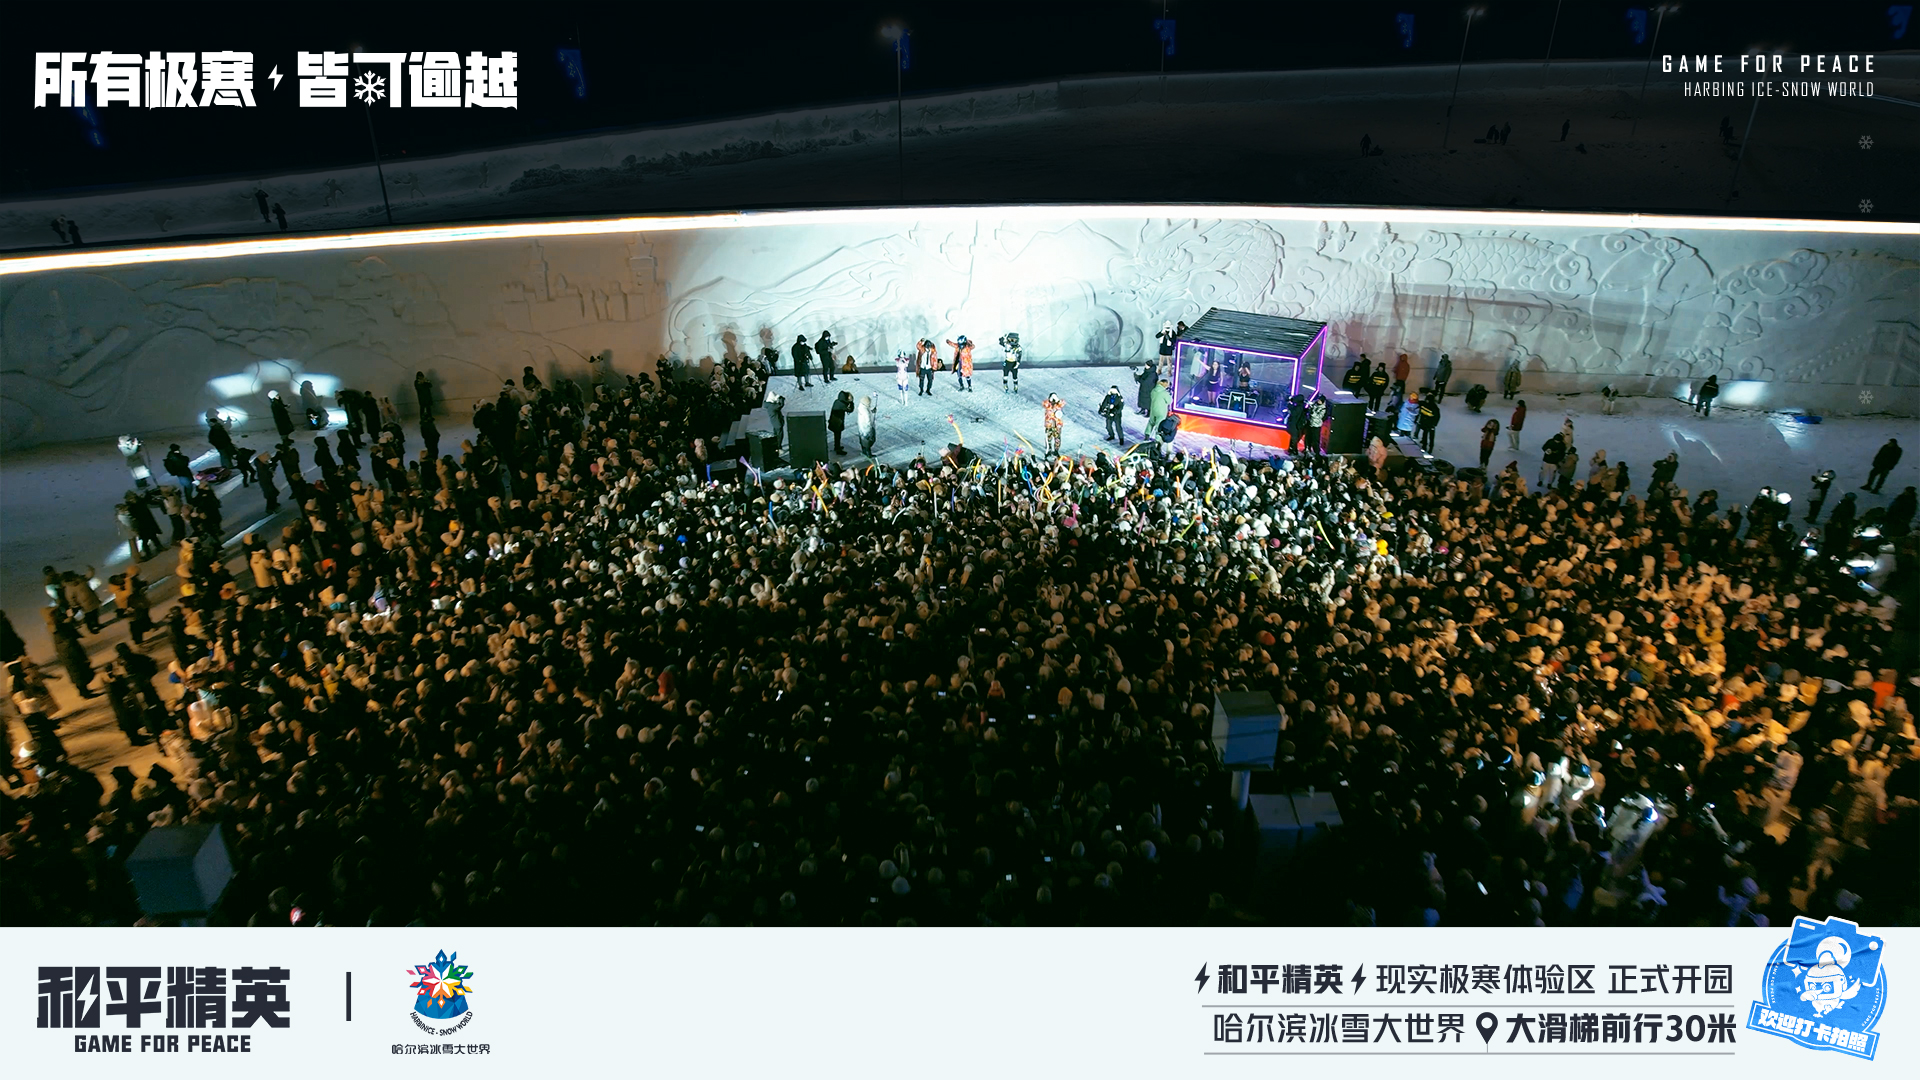 《和平精英》携手史上最大规模的哈尔滨冰雪大世界